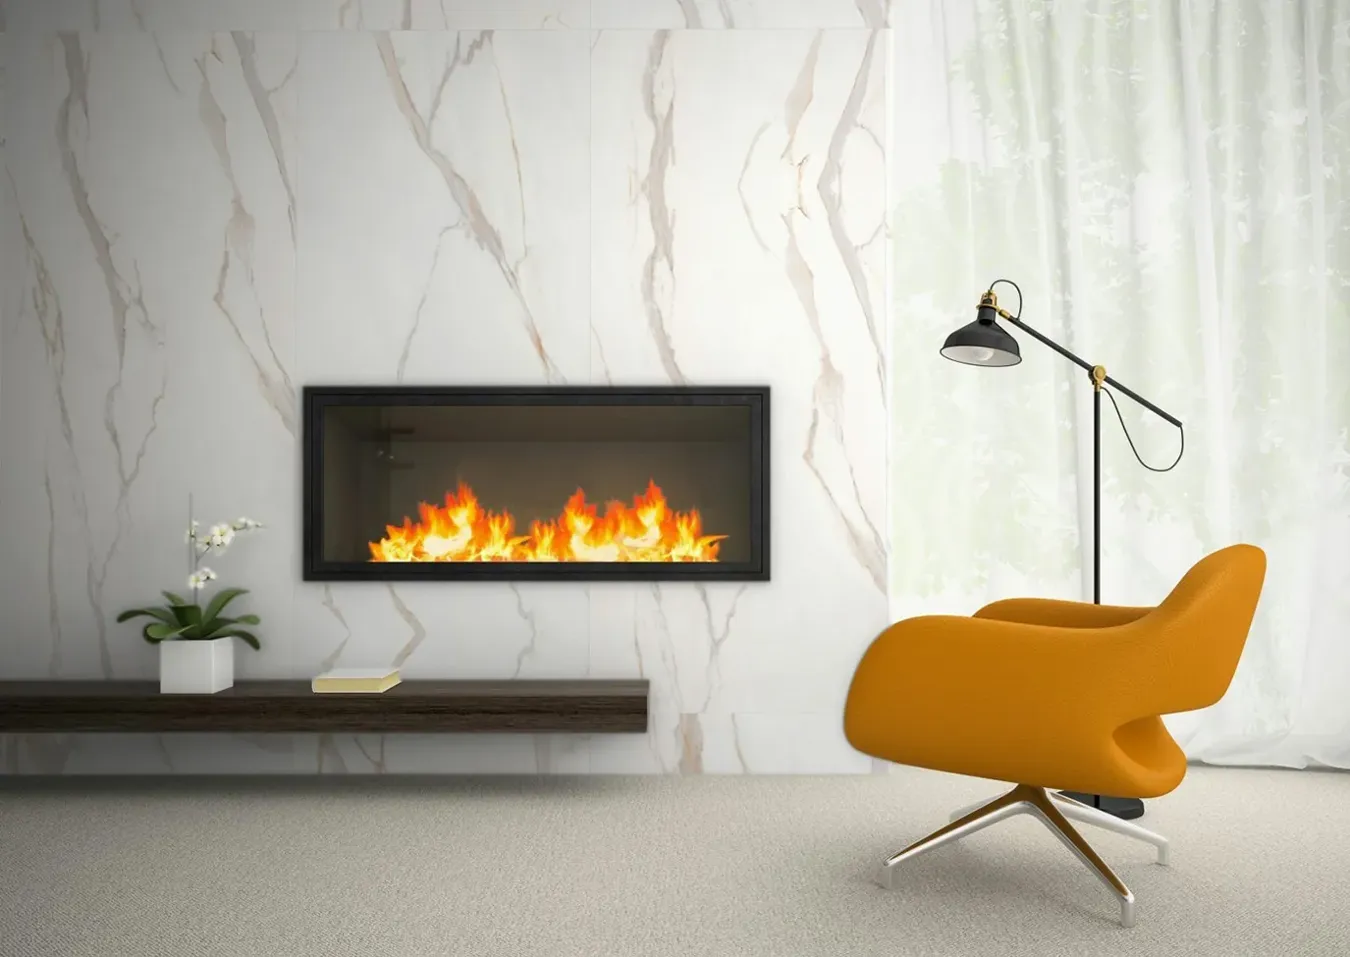 Salon sophistiqué avec cheminée en carreaux effet marbre blanc, fauteuil designer jaune et lampe sur pied élégante